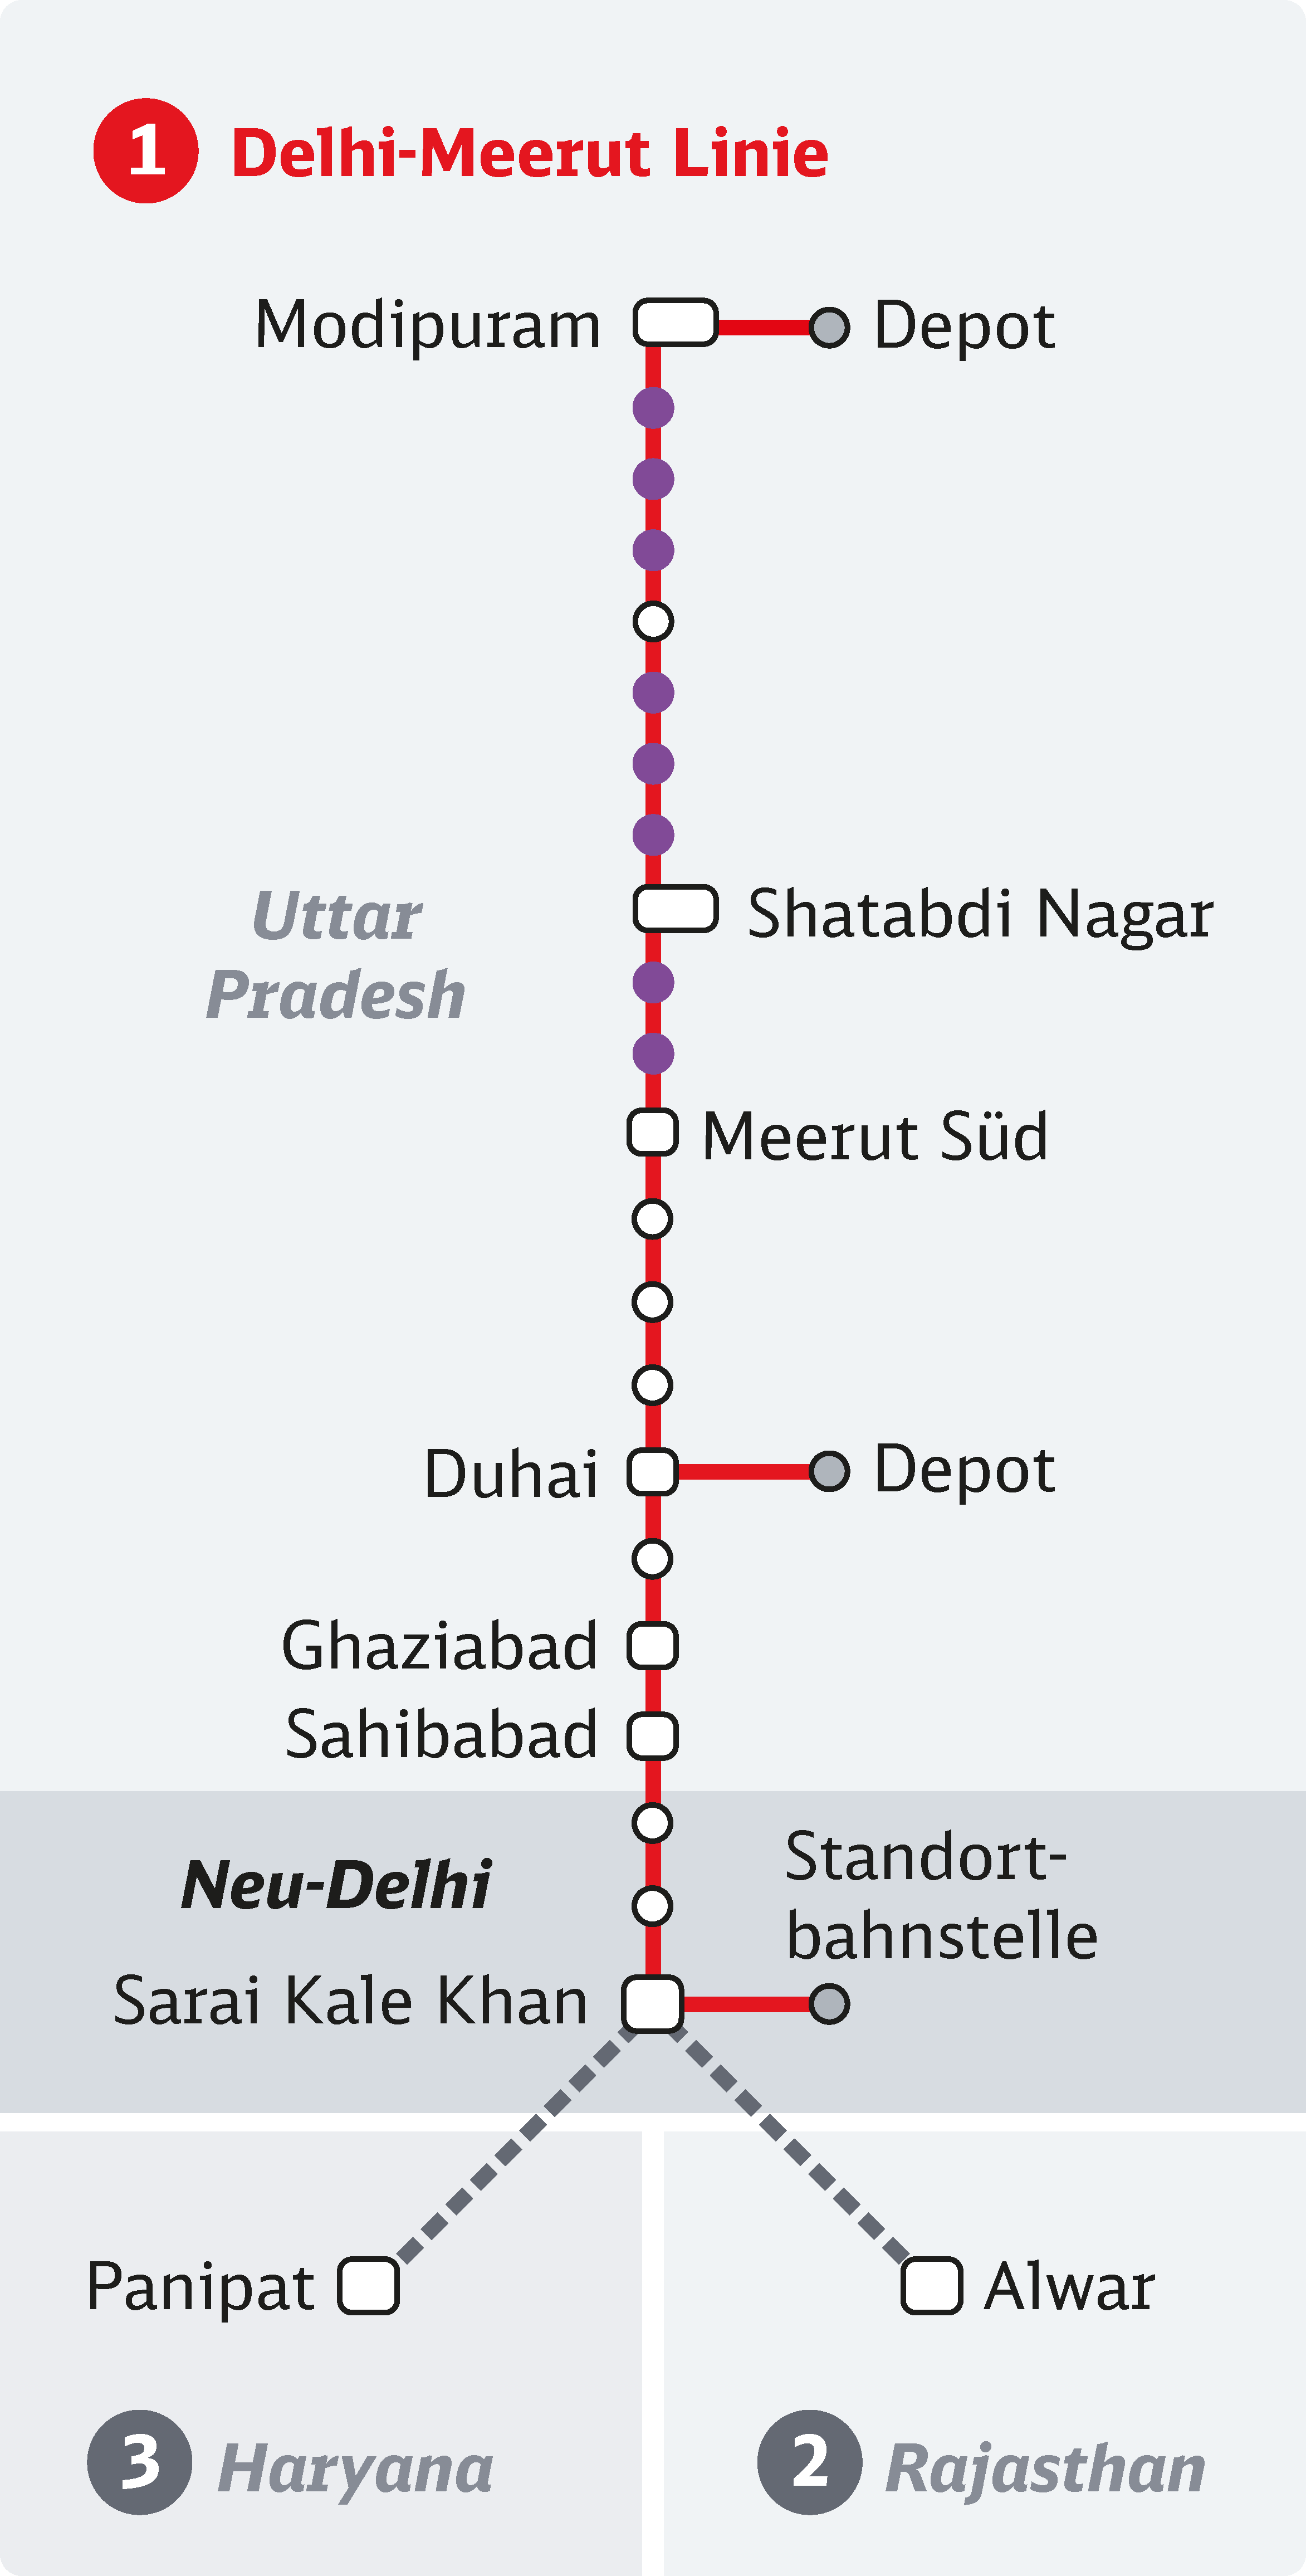 Schnellbahn - Delhi-Meerut Linie